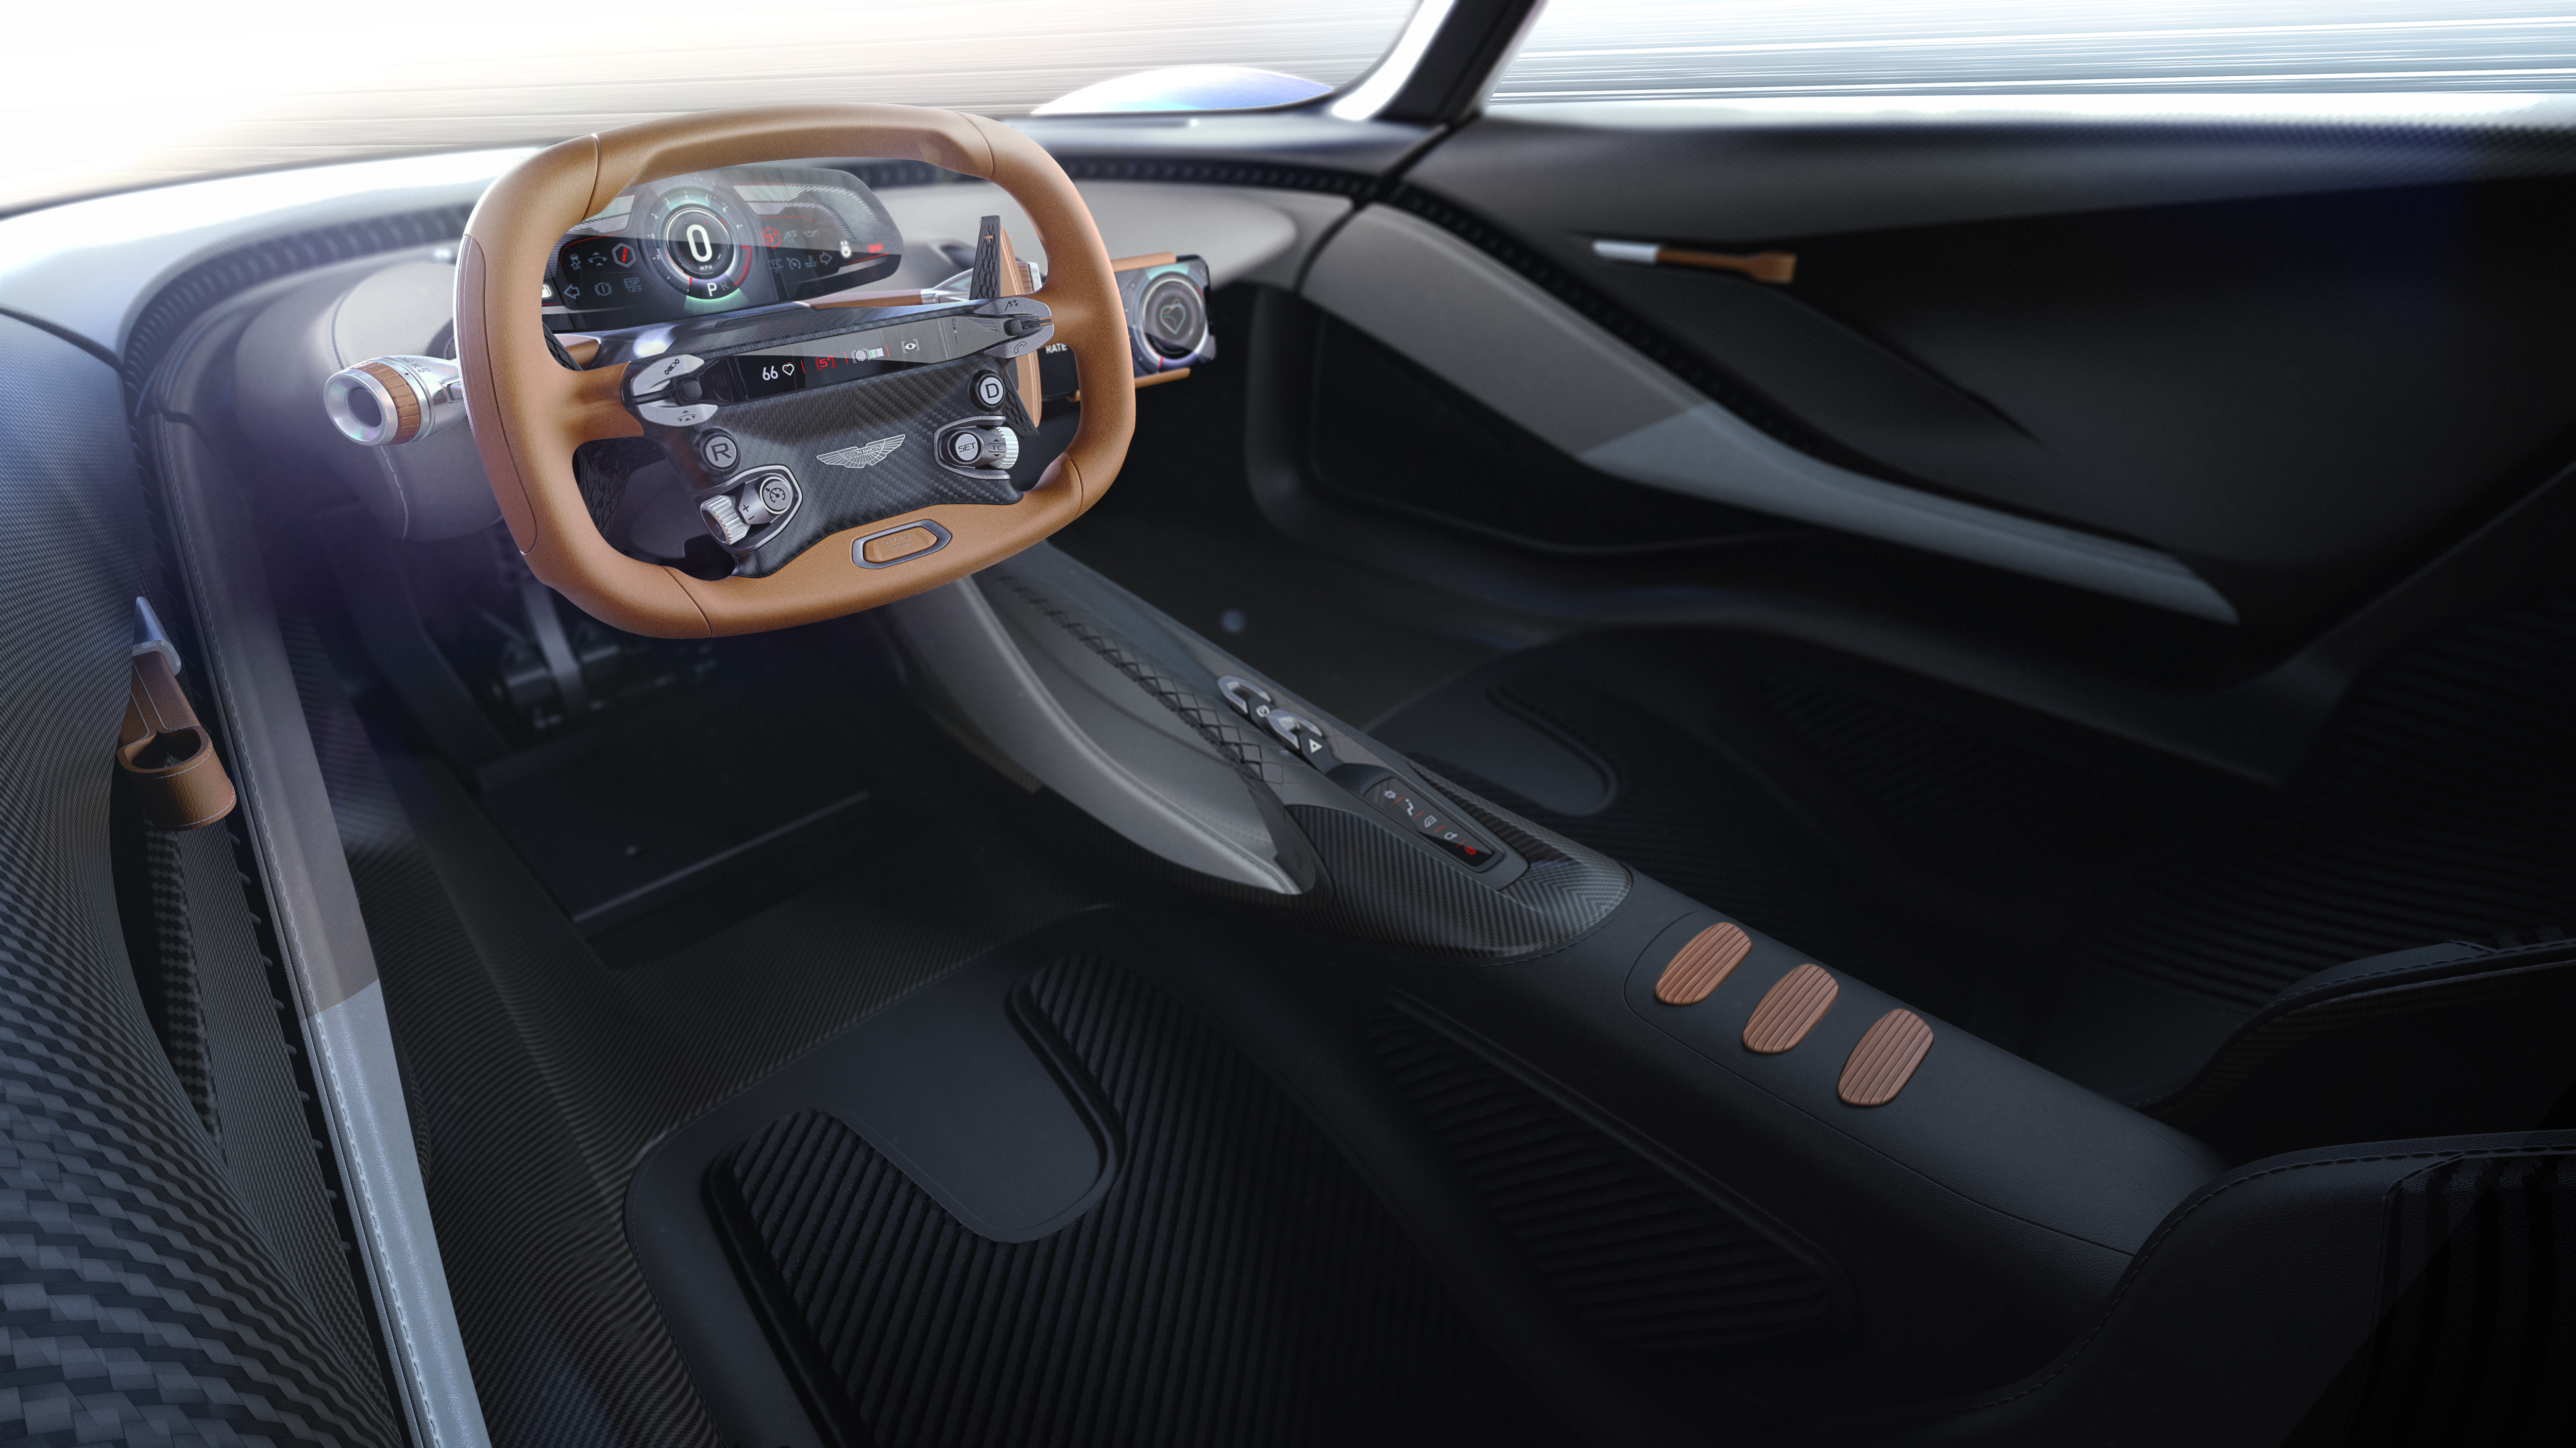 The 3D printed centre console of the Aston Martin AM-RB 003 hypercar. Image via Aston Martin.